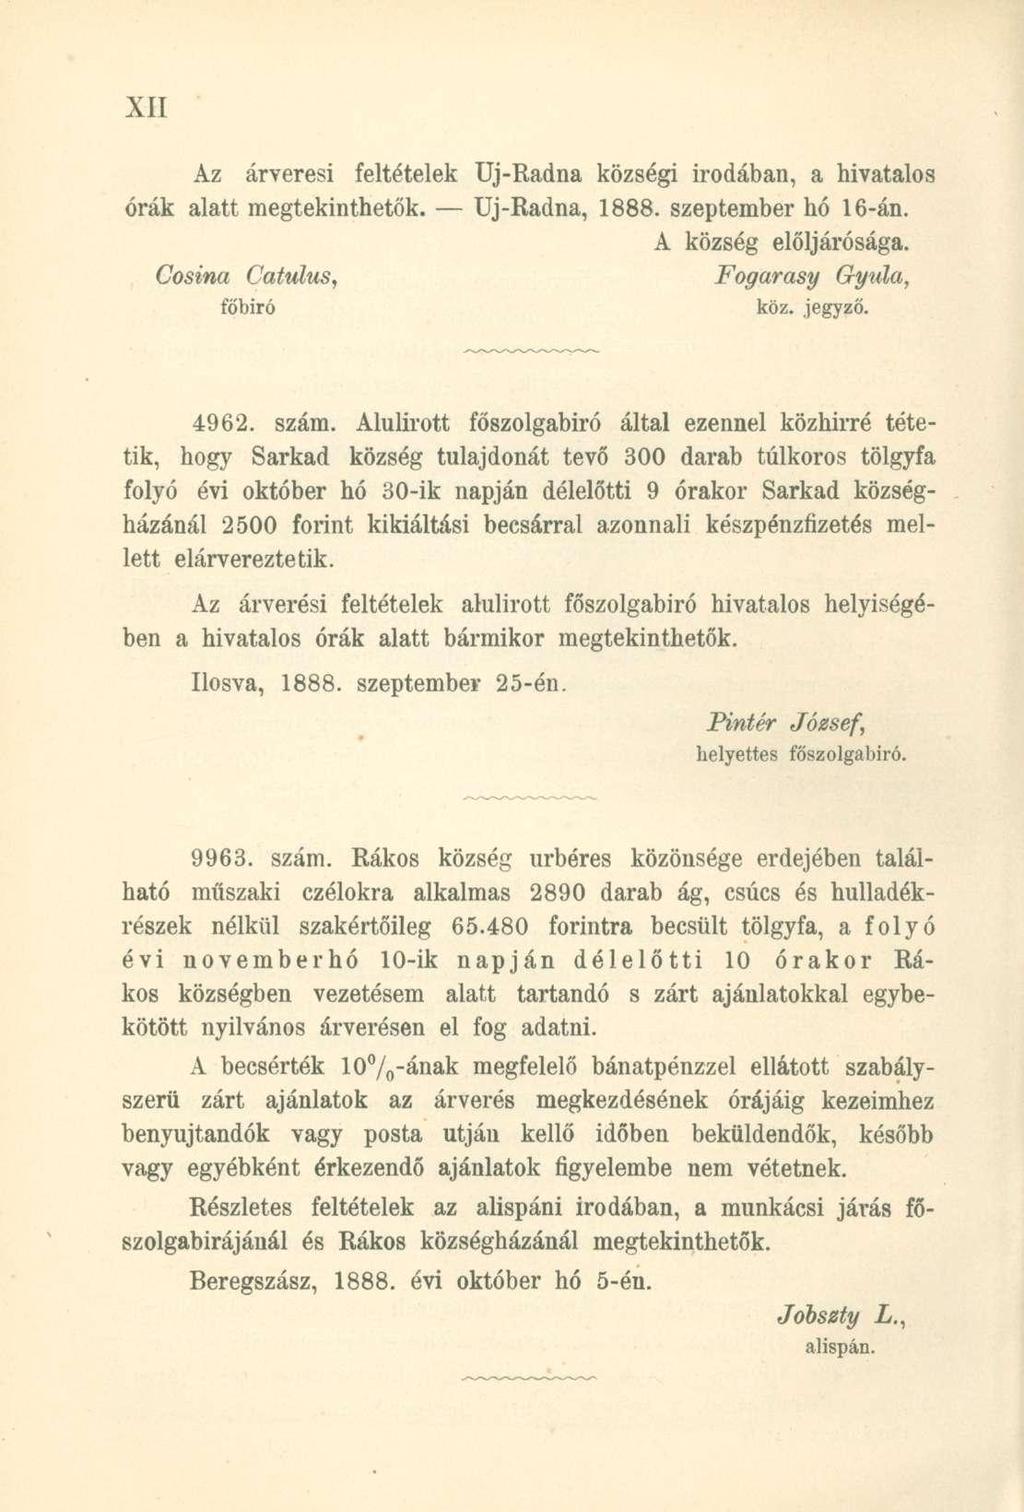 Az árverési feltételek Uj-Radna községi irodában, a hivatalos órák alatt megtekinthetők. Uj-Radna, 1888. szeptember hó 16-án. A község elöljárósága. Cosina Catulus, Fogarasy Gyula, főbiró köz. jegyző.